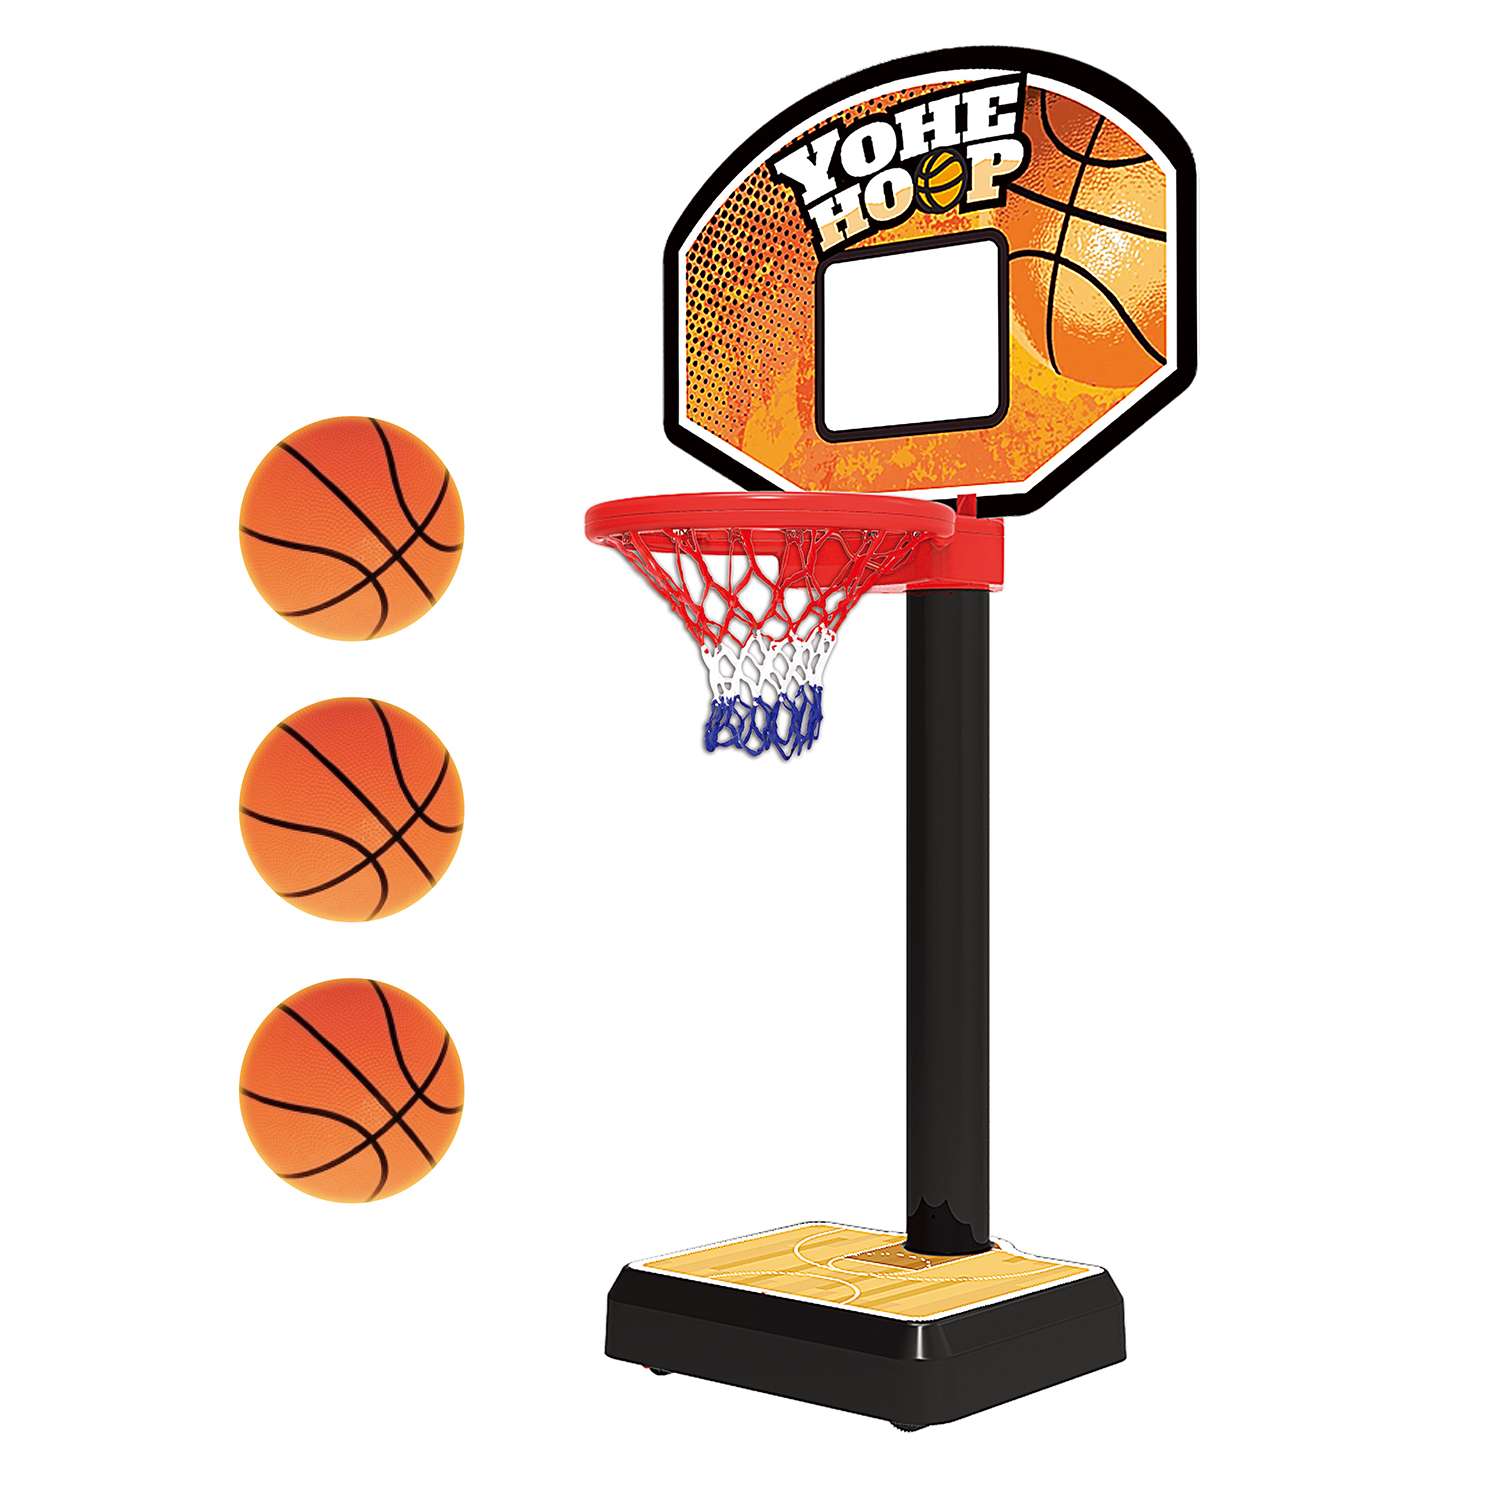 Игровой набор YOHEHA Подвижное баскетбольное кольцо - фото 1